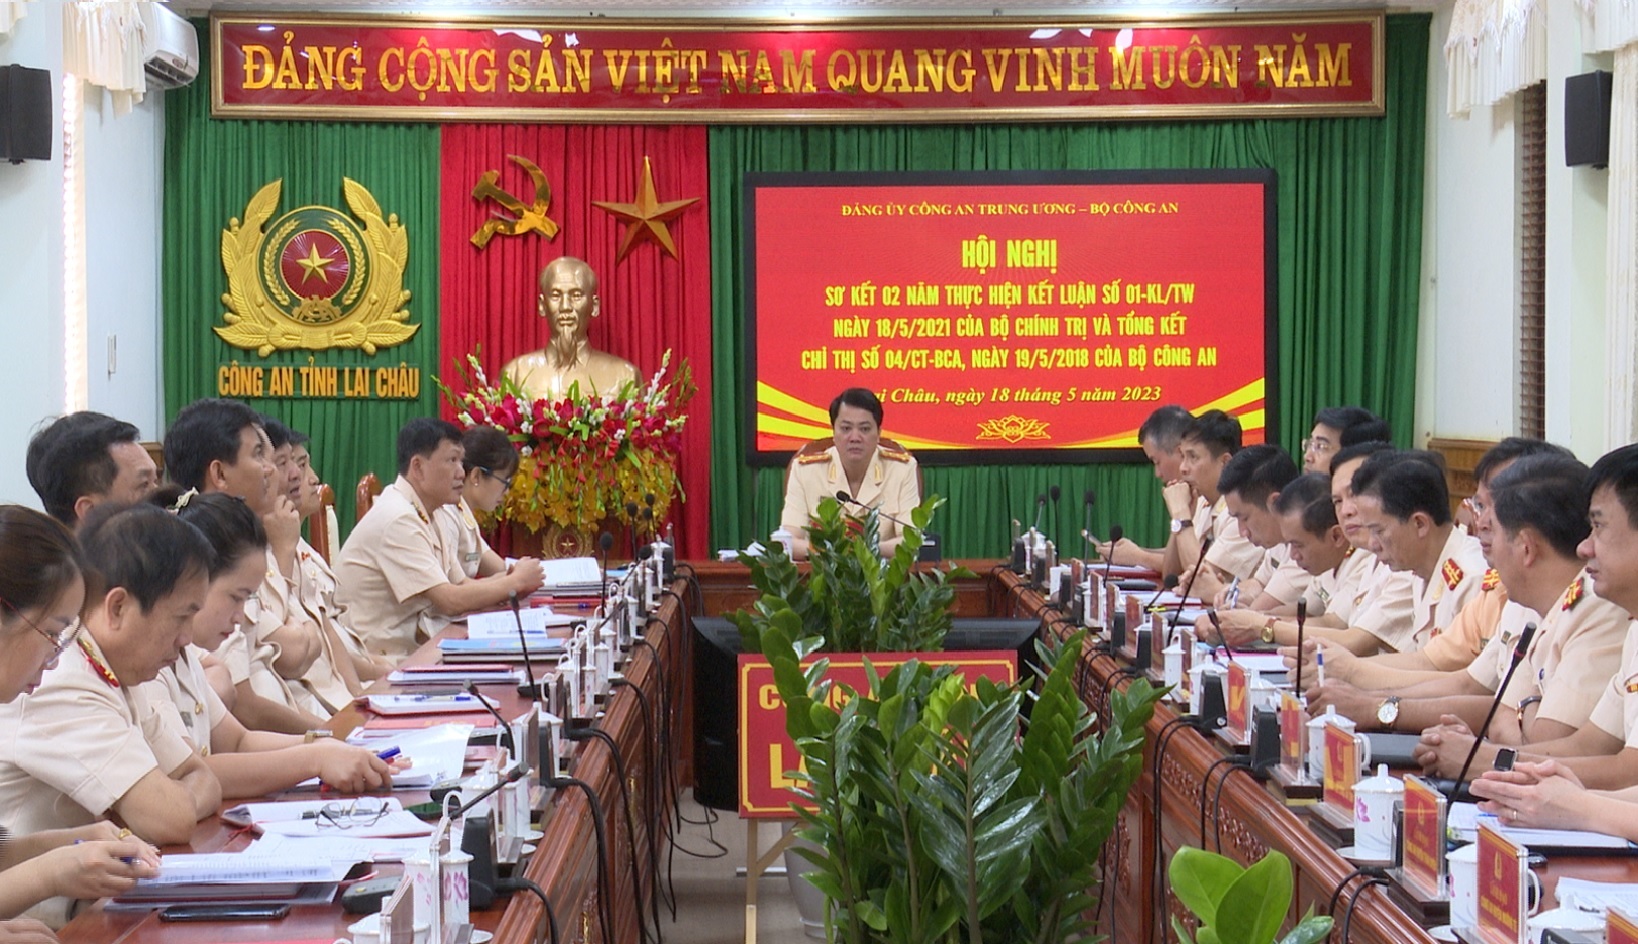 Đại tá Nguyễn Viết Giang - Giám đốc Công an tỉnh dự Hội nghị tại điểm cầu Công an tỉnh Lai Châu